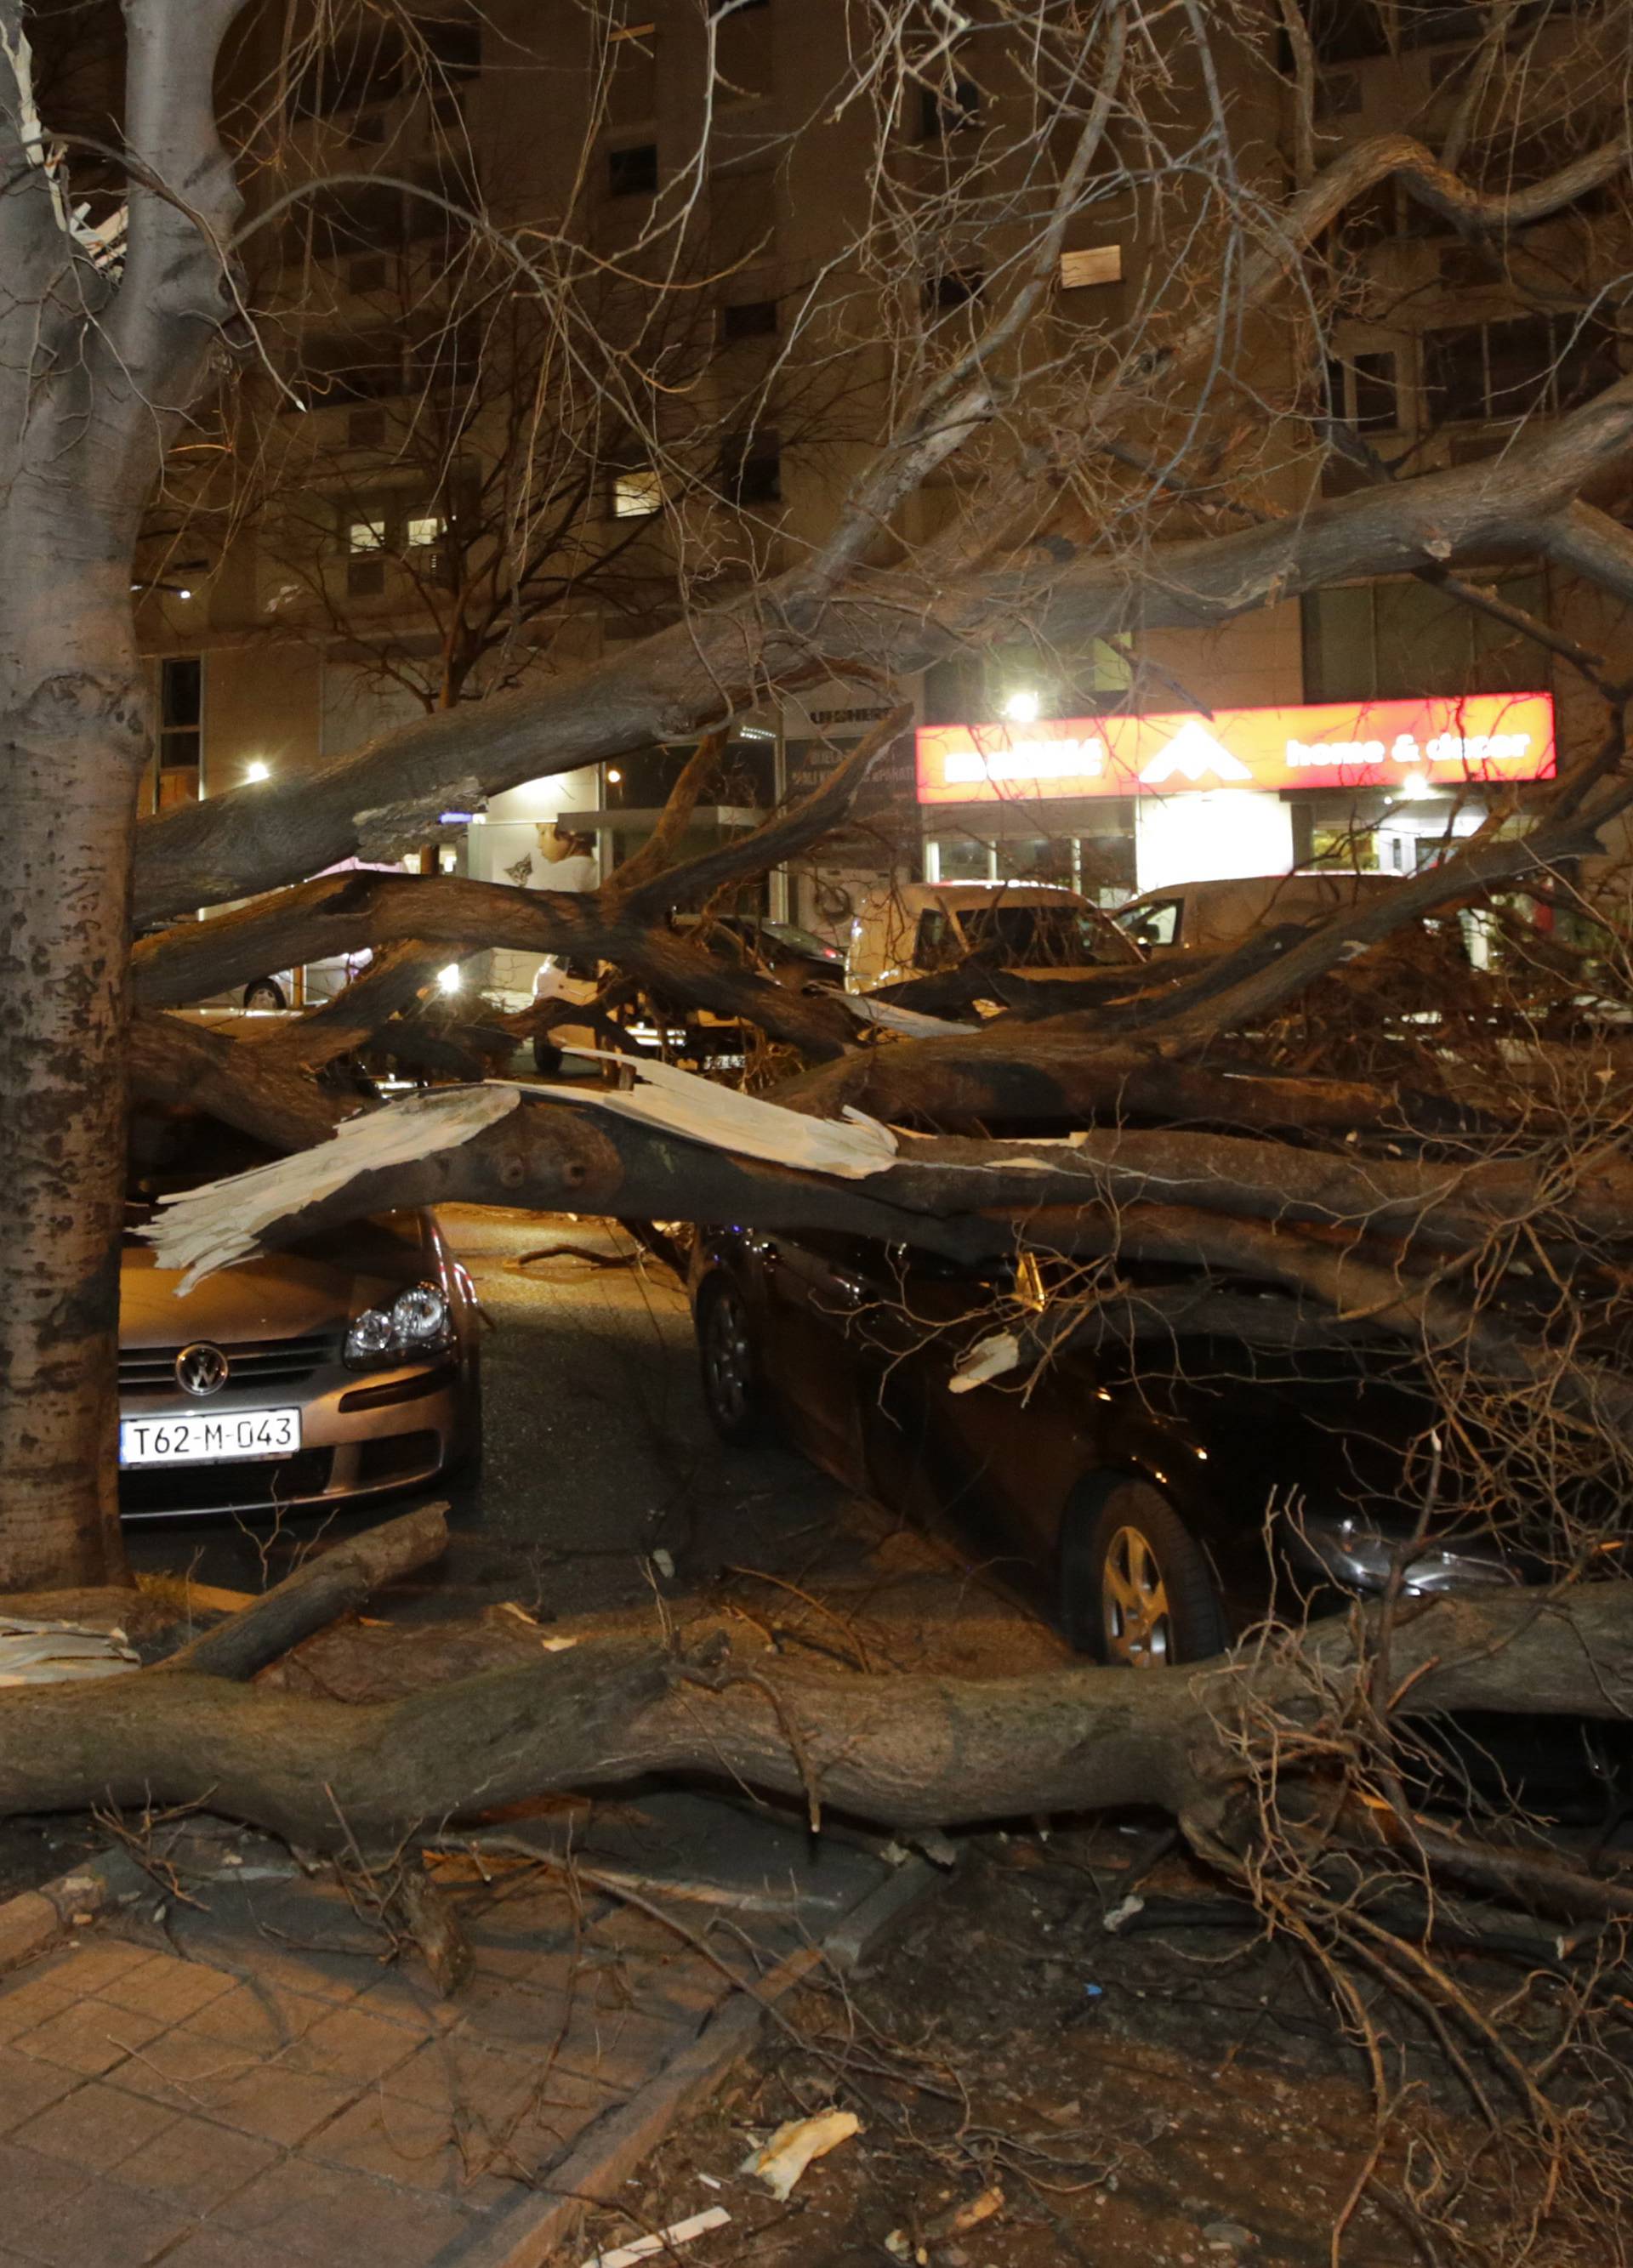 Olujni vjetar u Mostaru rušio sve pred sobom